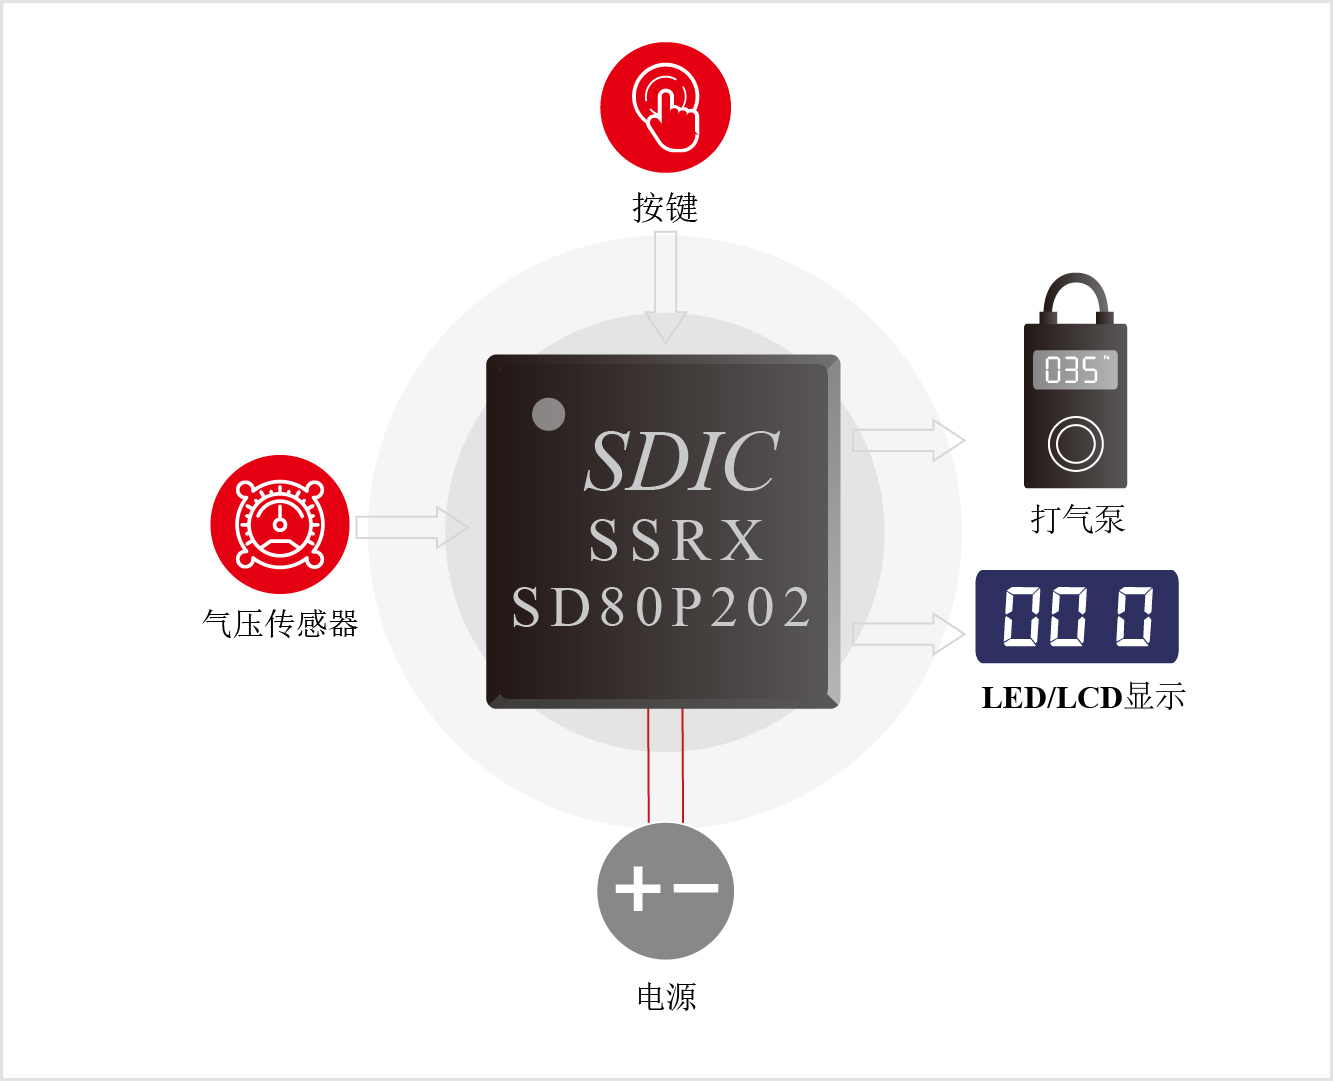 晶华微SD80P202便携式打气泵方案